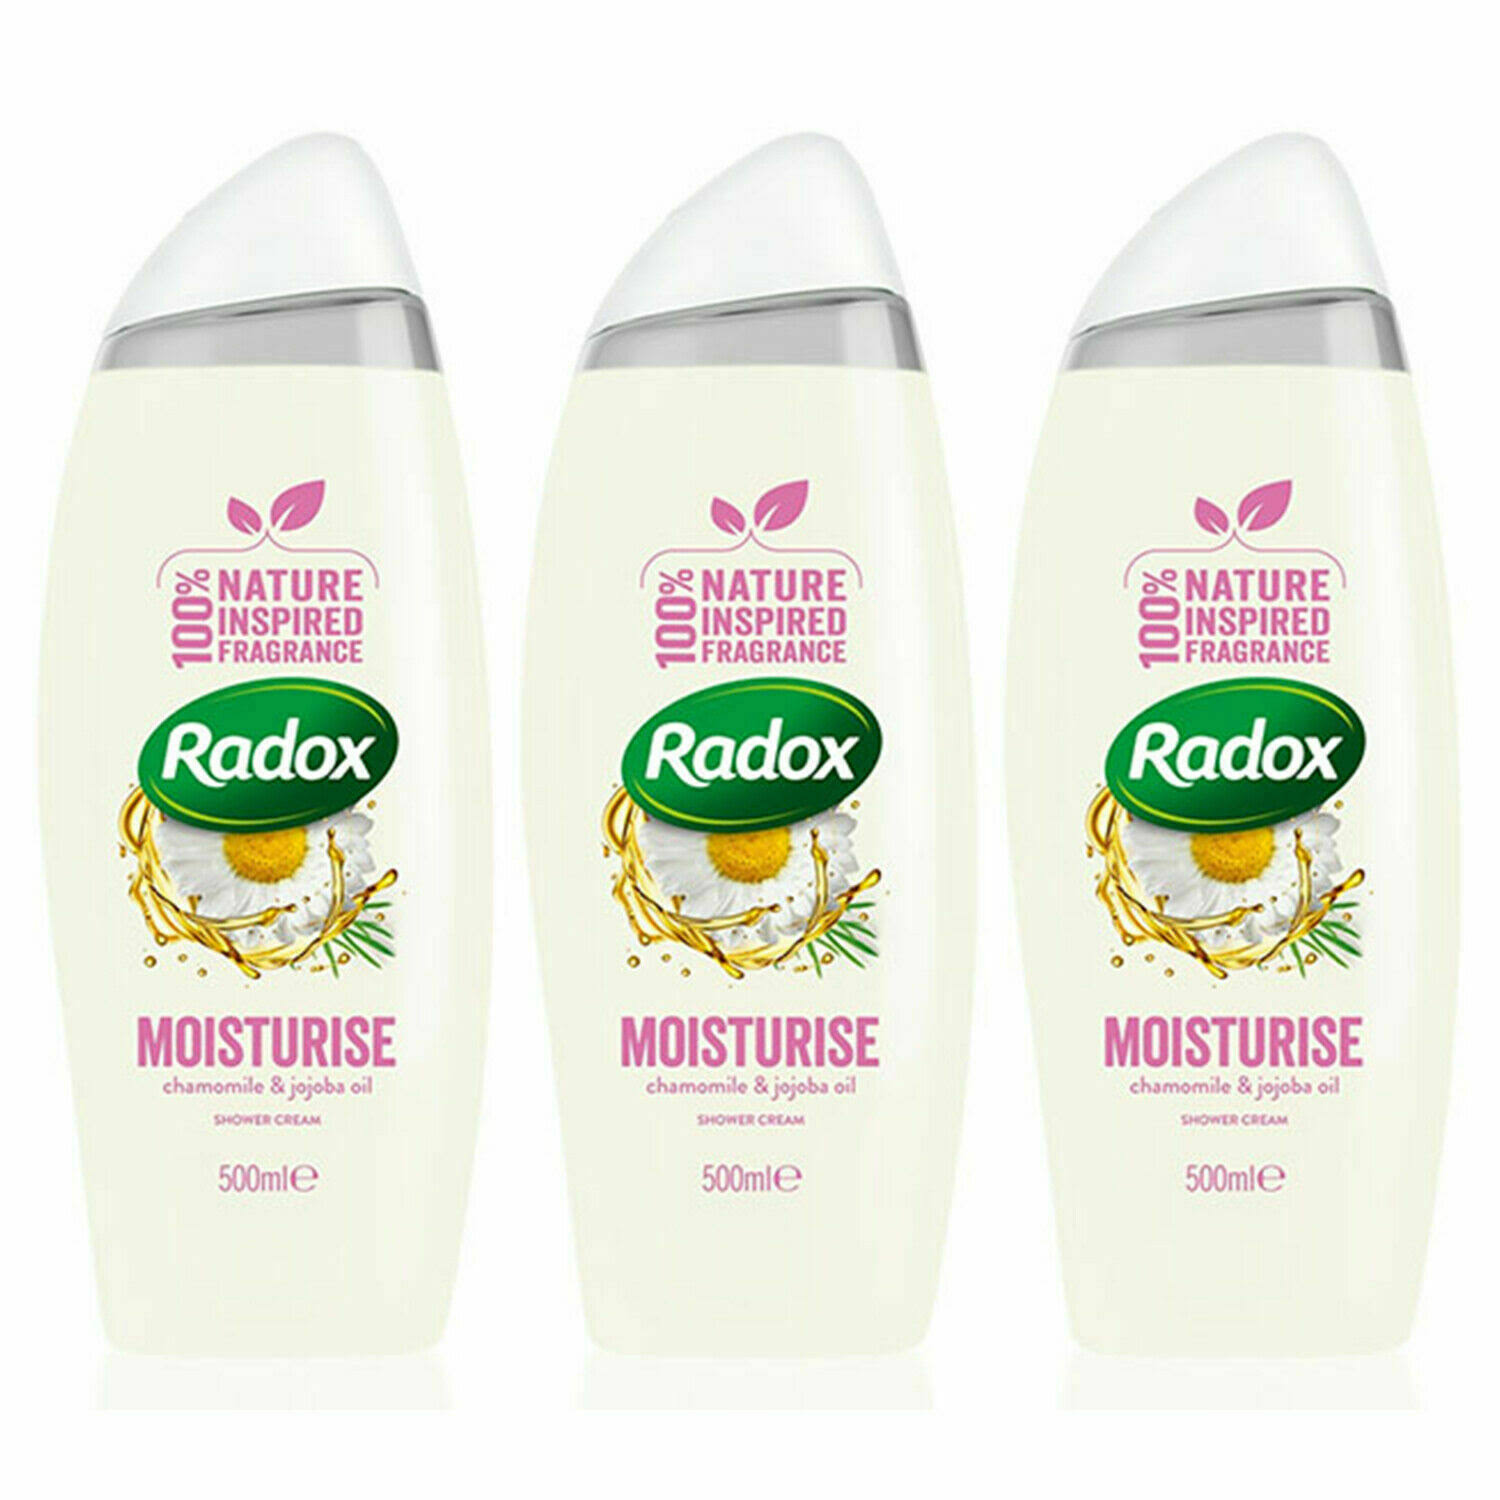 Radox Moisturise Shower Gel - 500ml